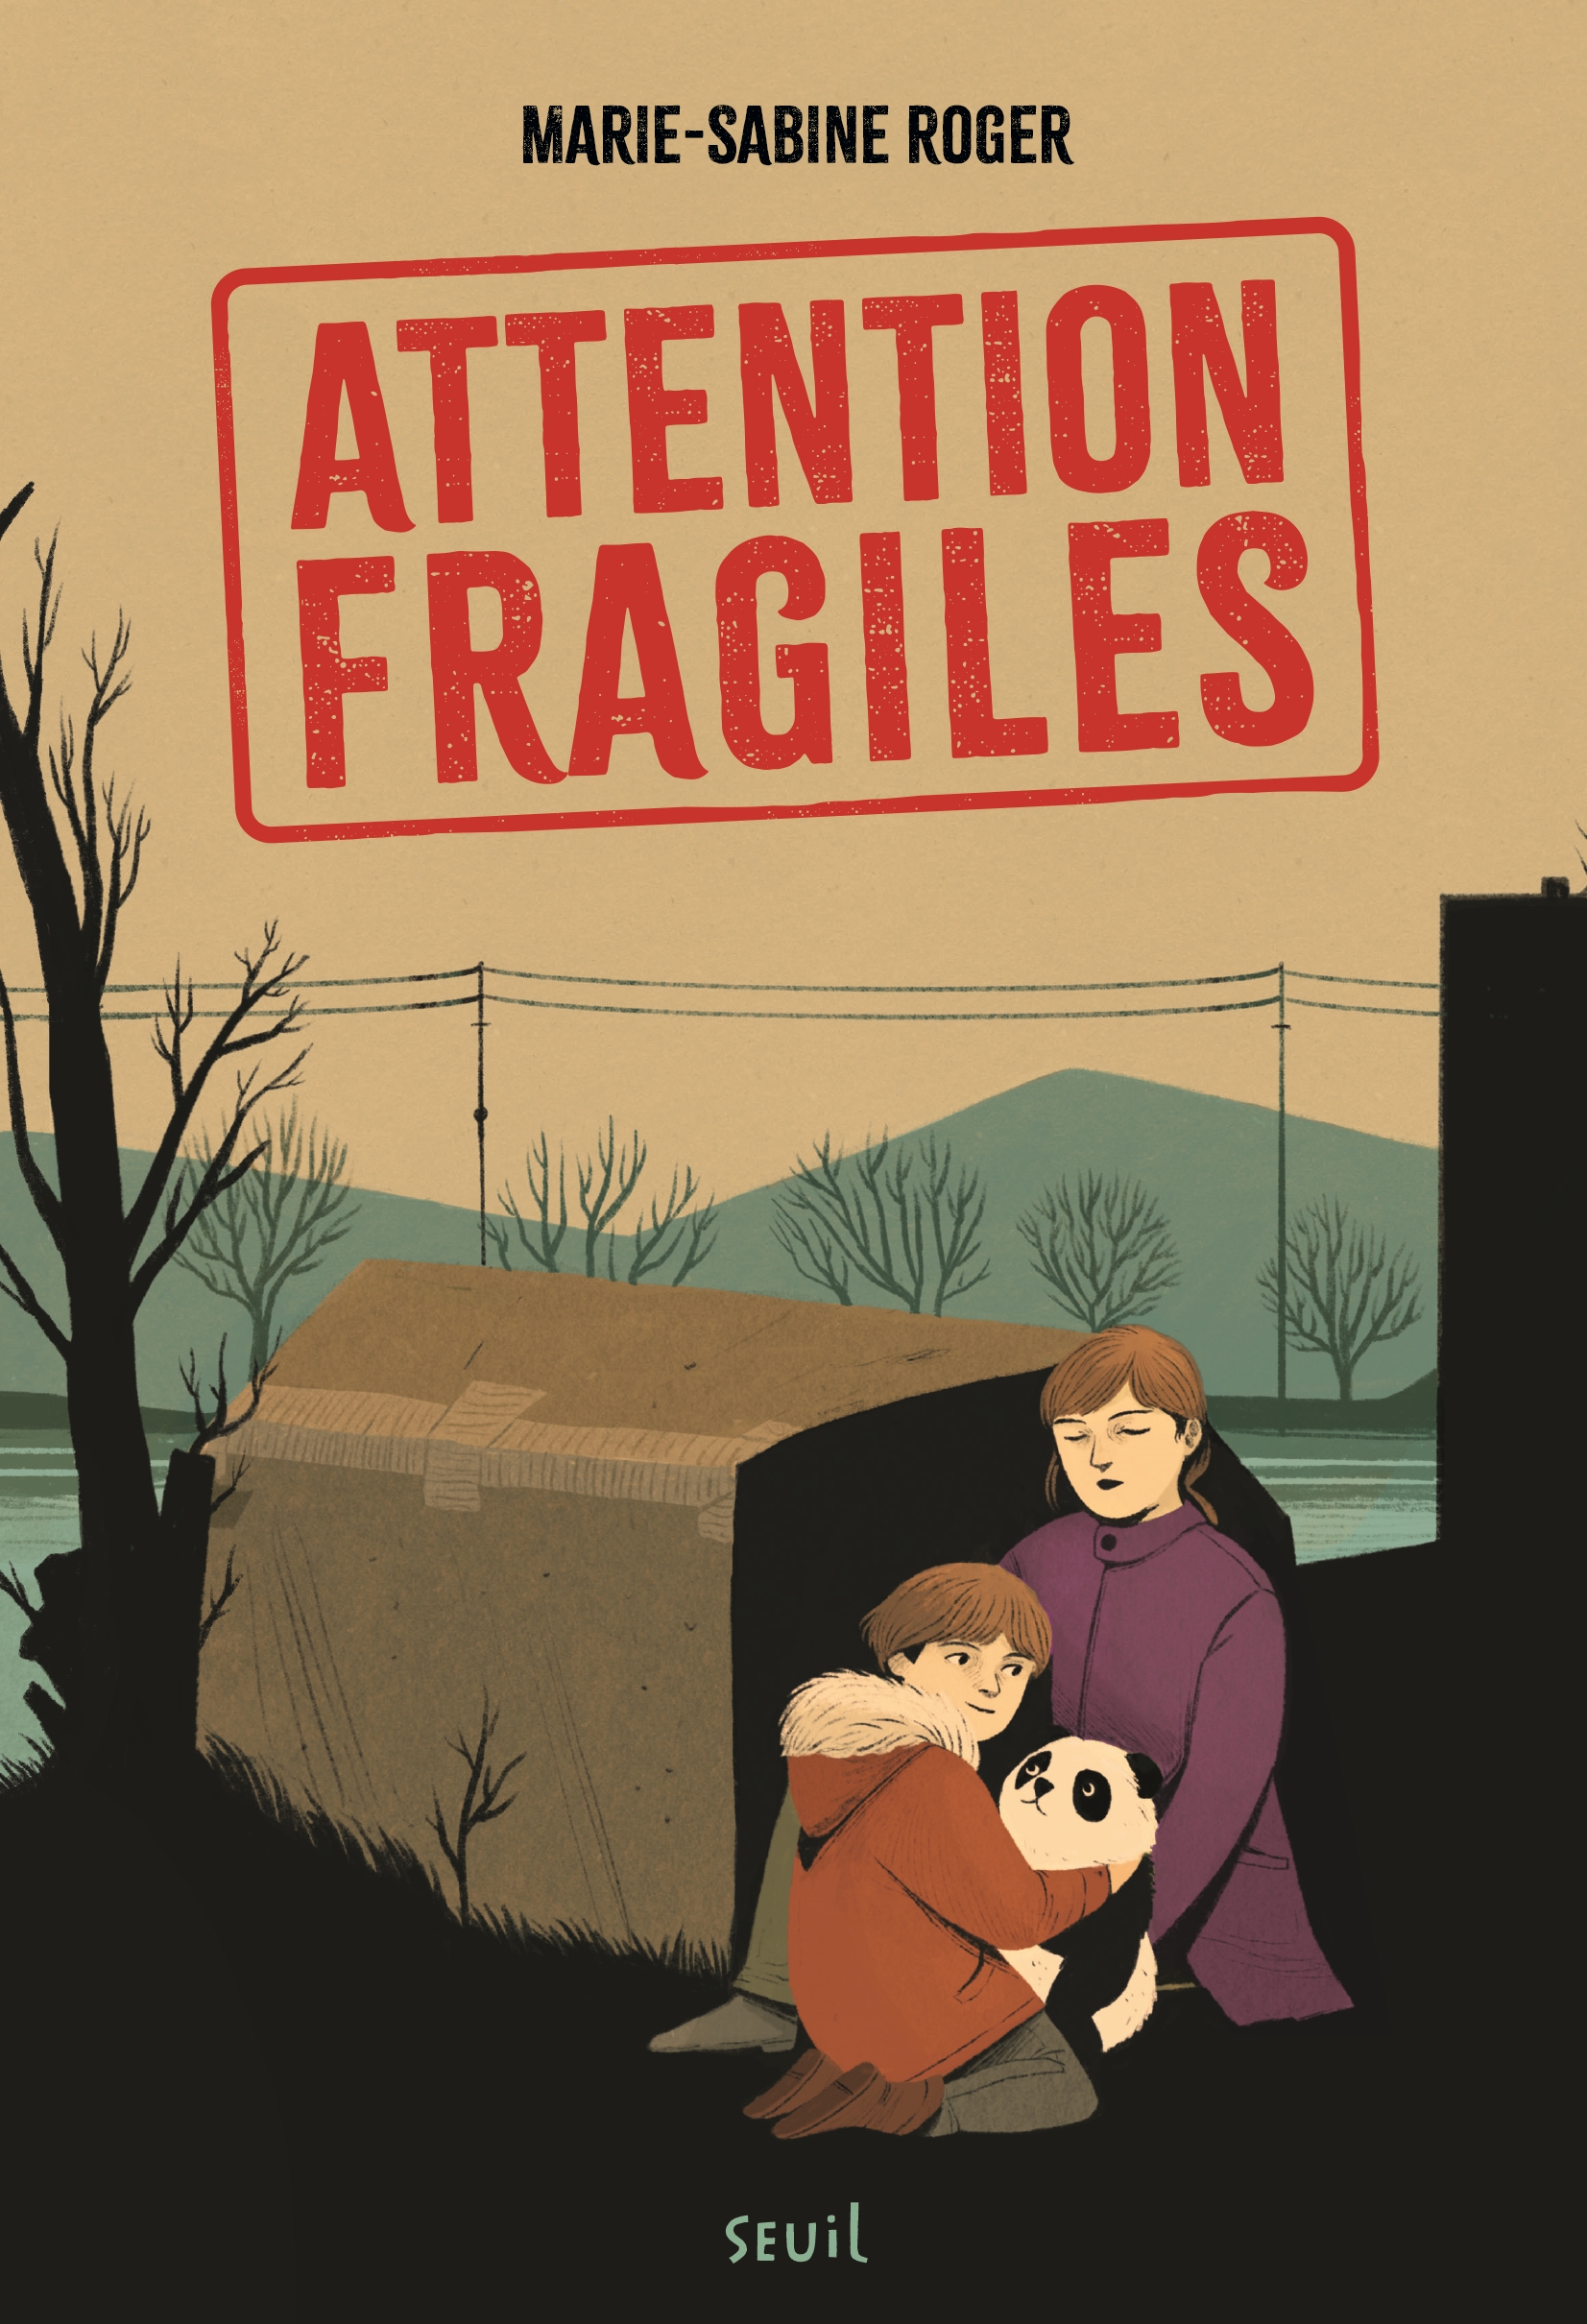 Afficher "Attention fragiles"